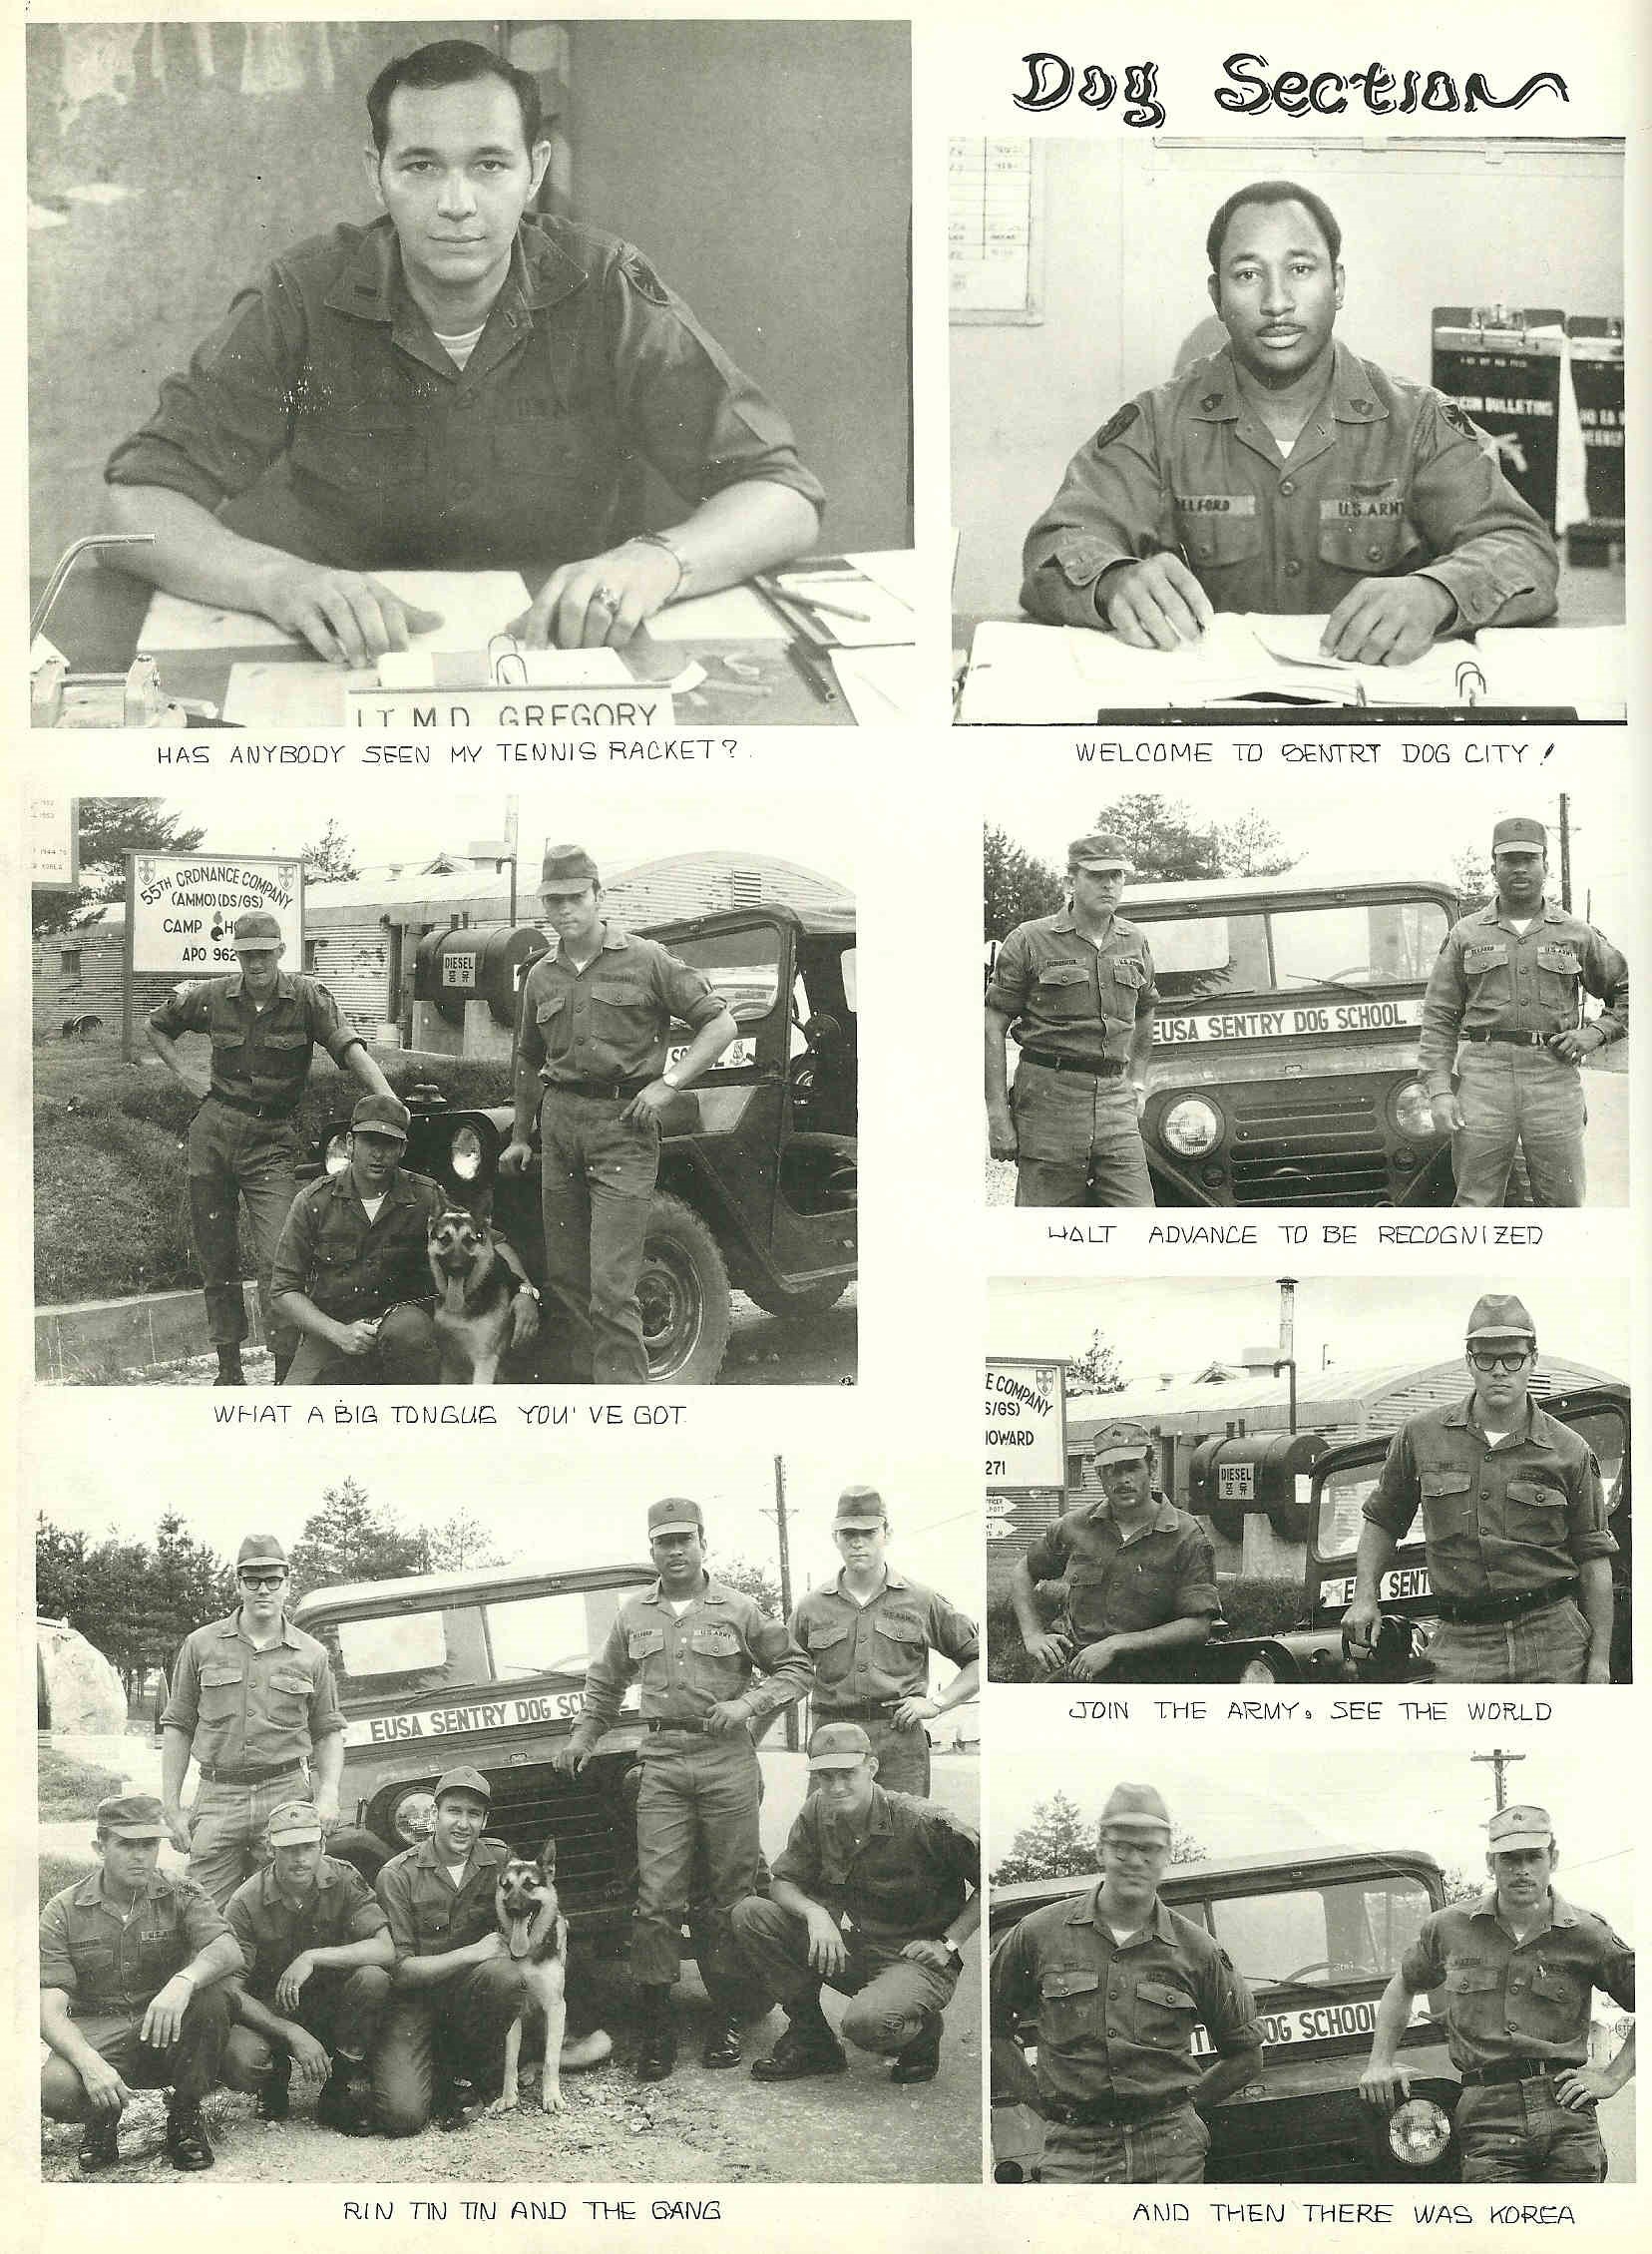 8th Army Dog School 1970